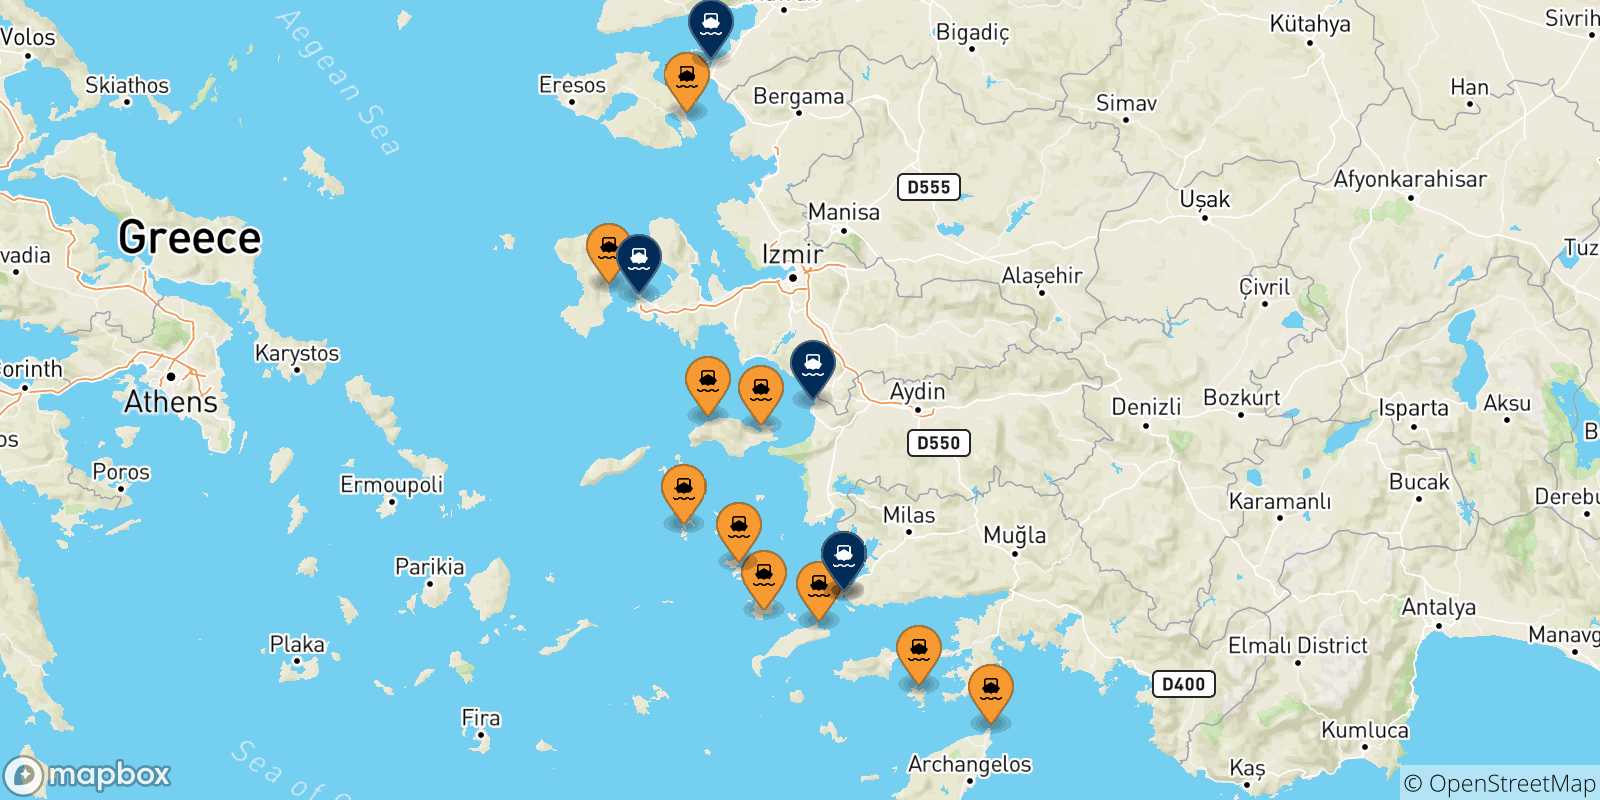 Mappa dei porti collegati con la Turchia